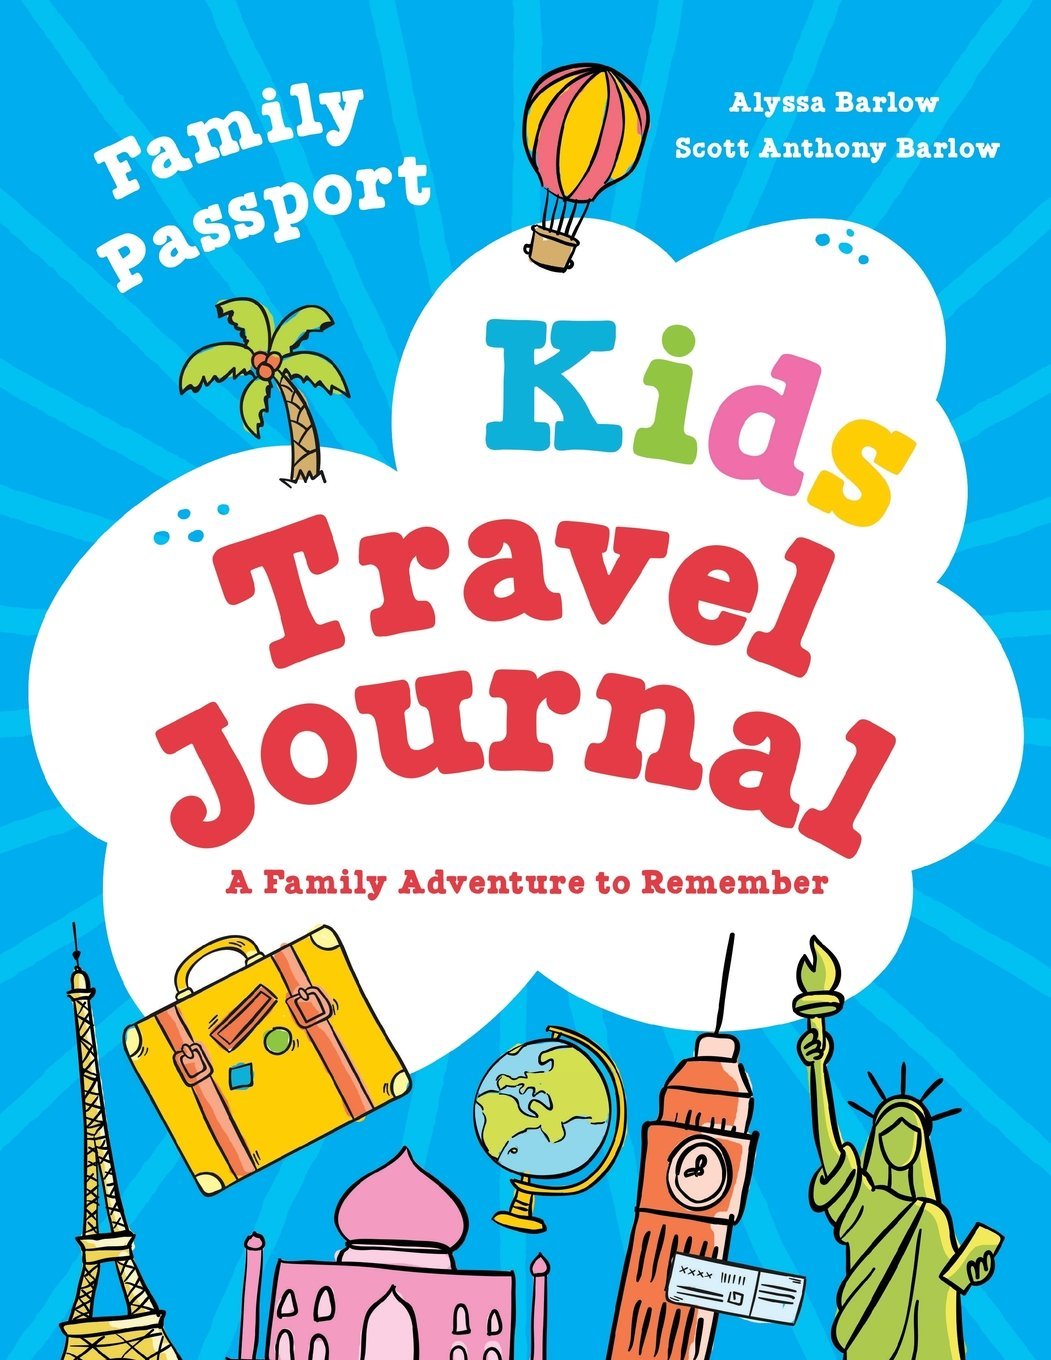 passport clipart travel journal